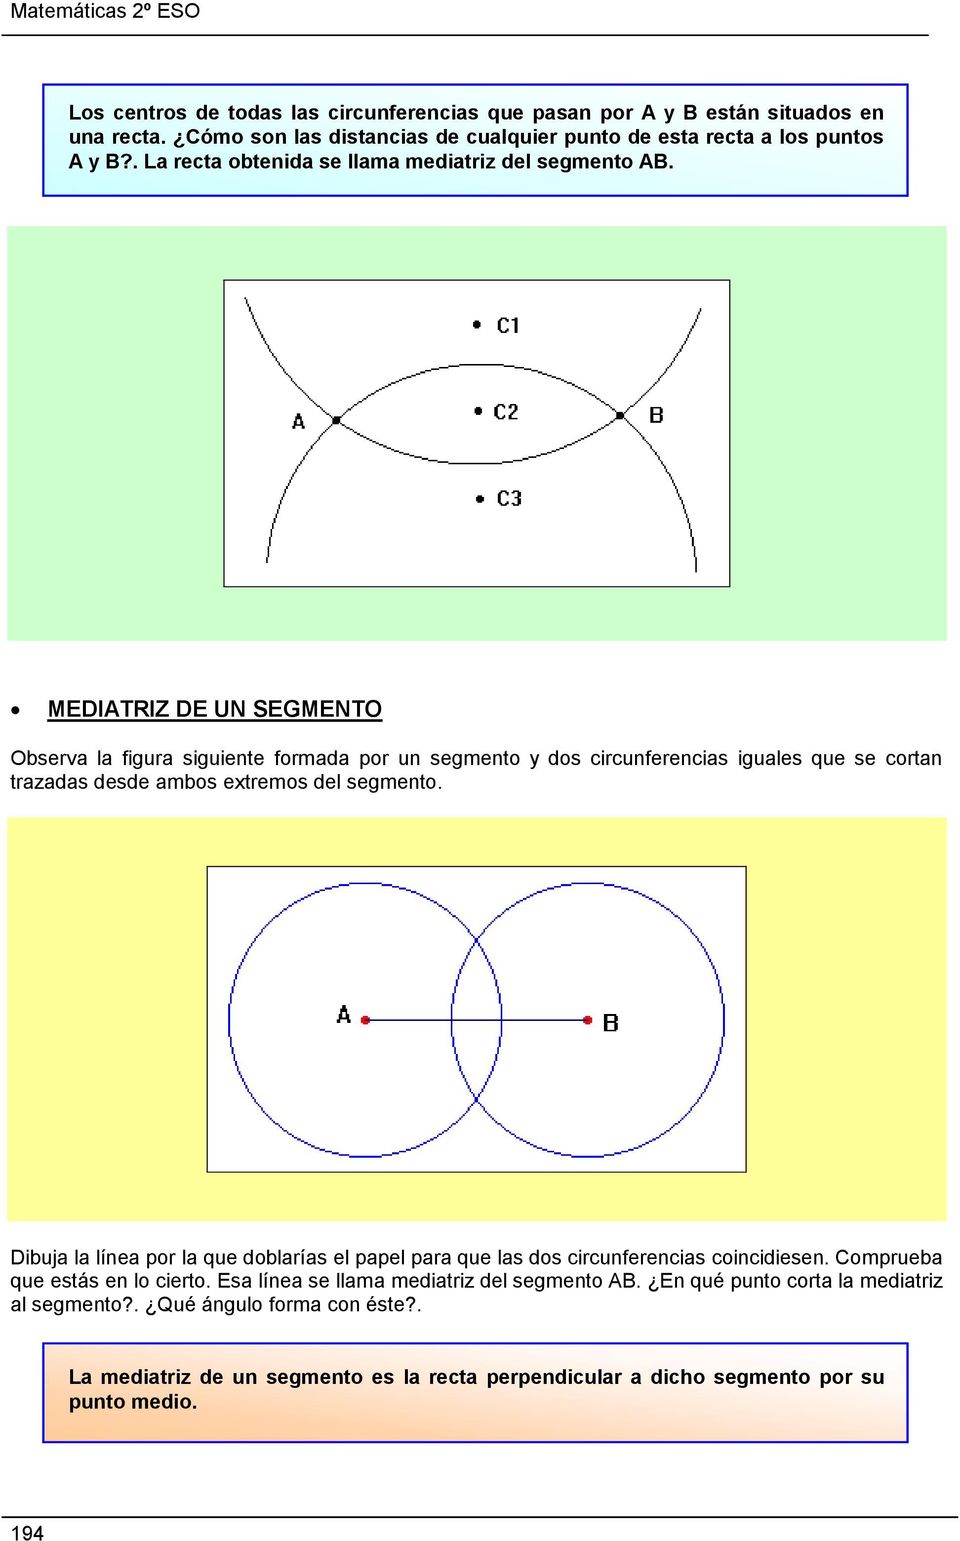 MEDIATRIZ DE UN SEGMENTO Observa la figura siguiente formada por un segmento y dos circunferencias iguales que se cortan trazadas desde ambos extremos del segmento.